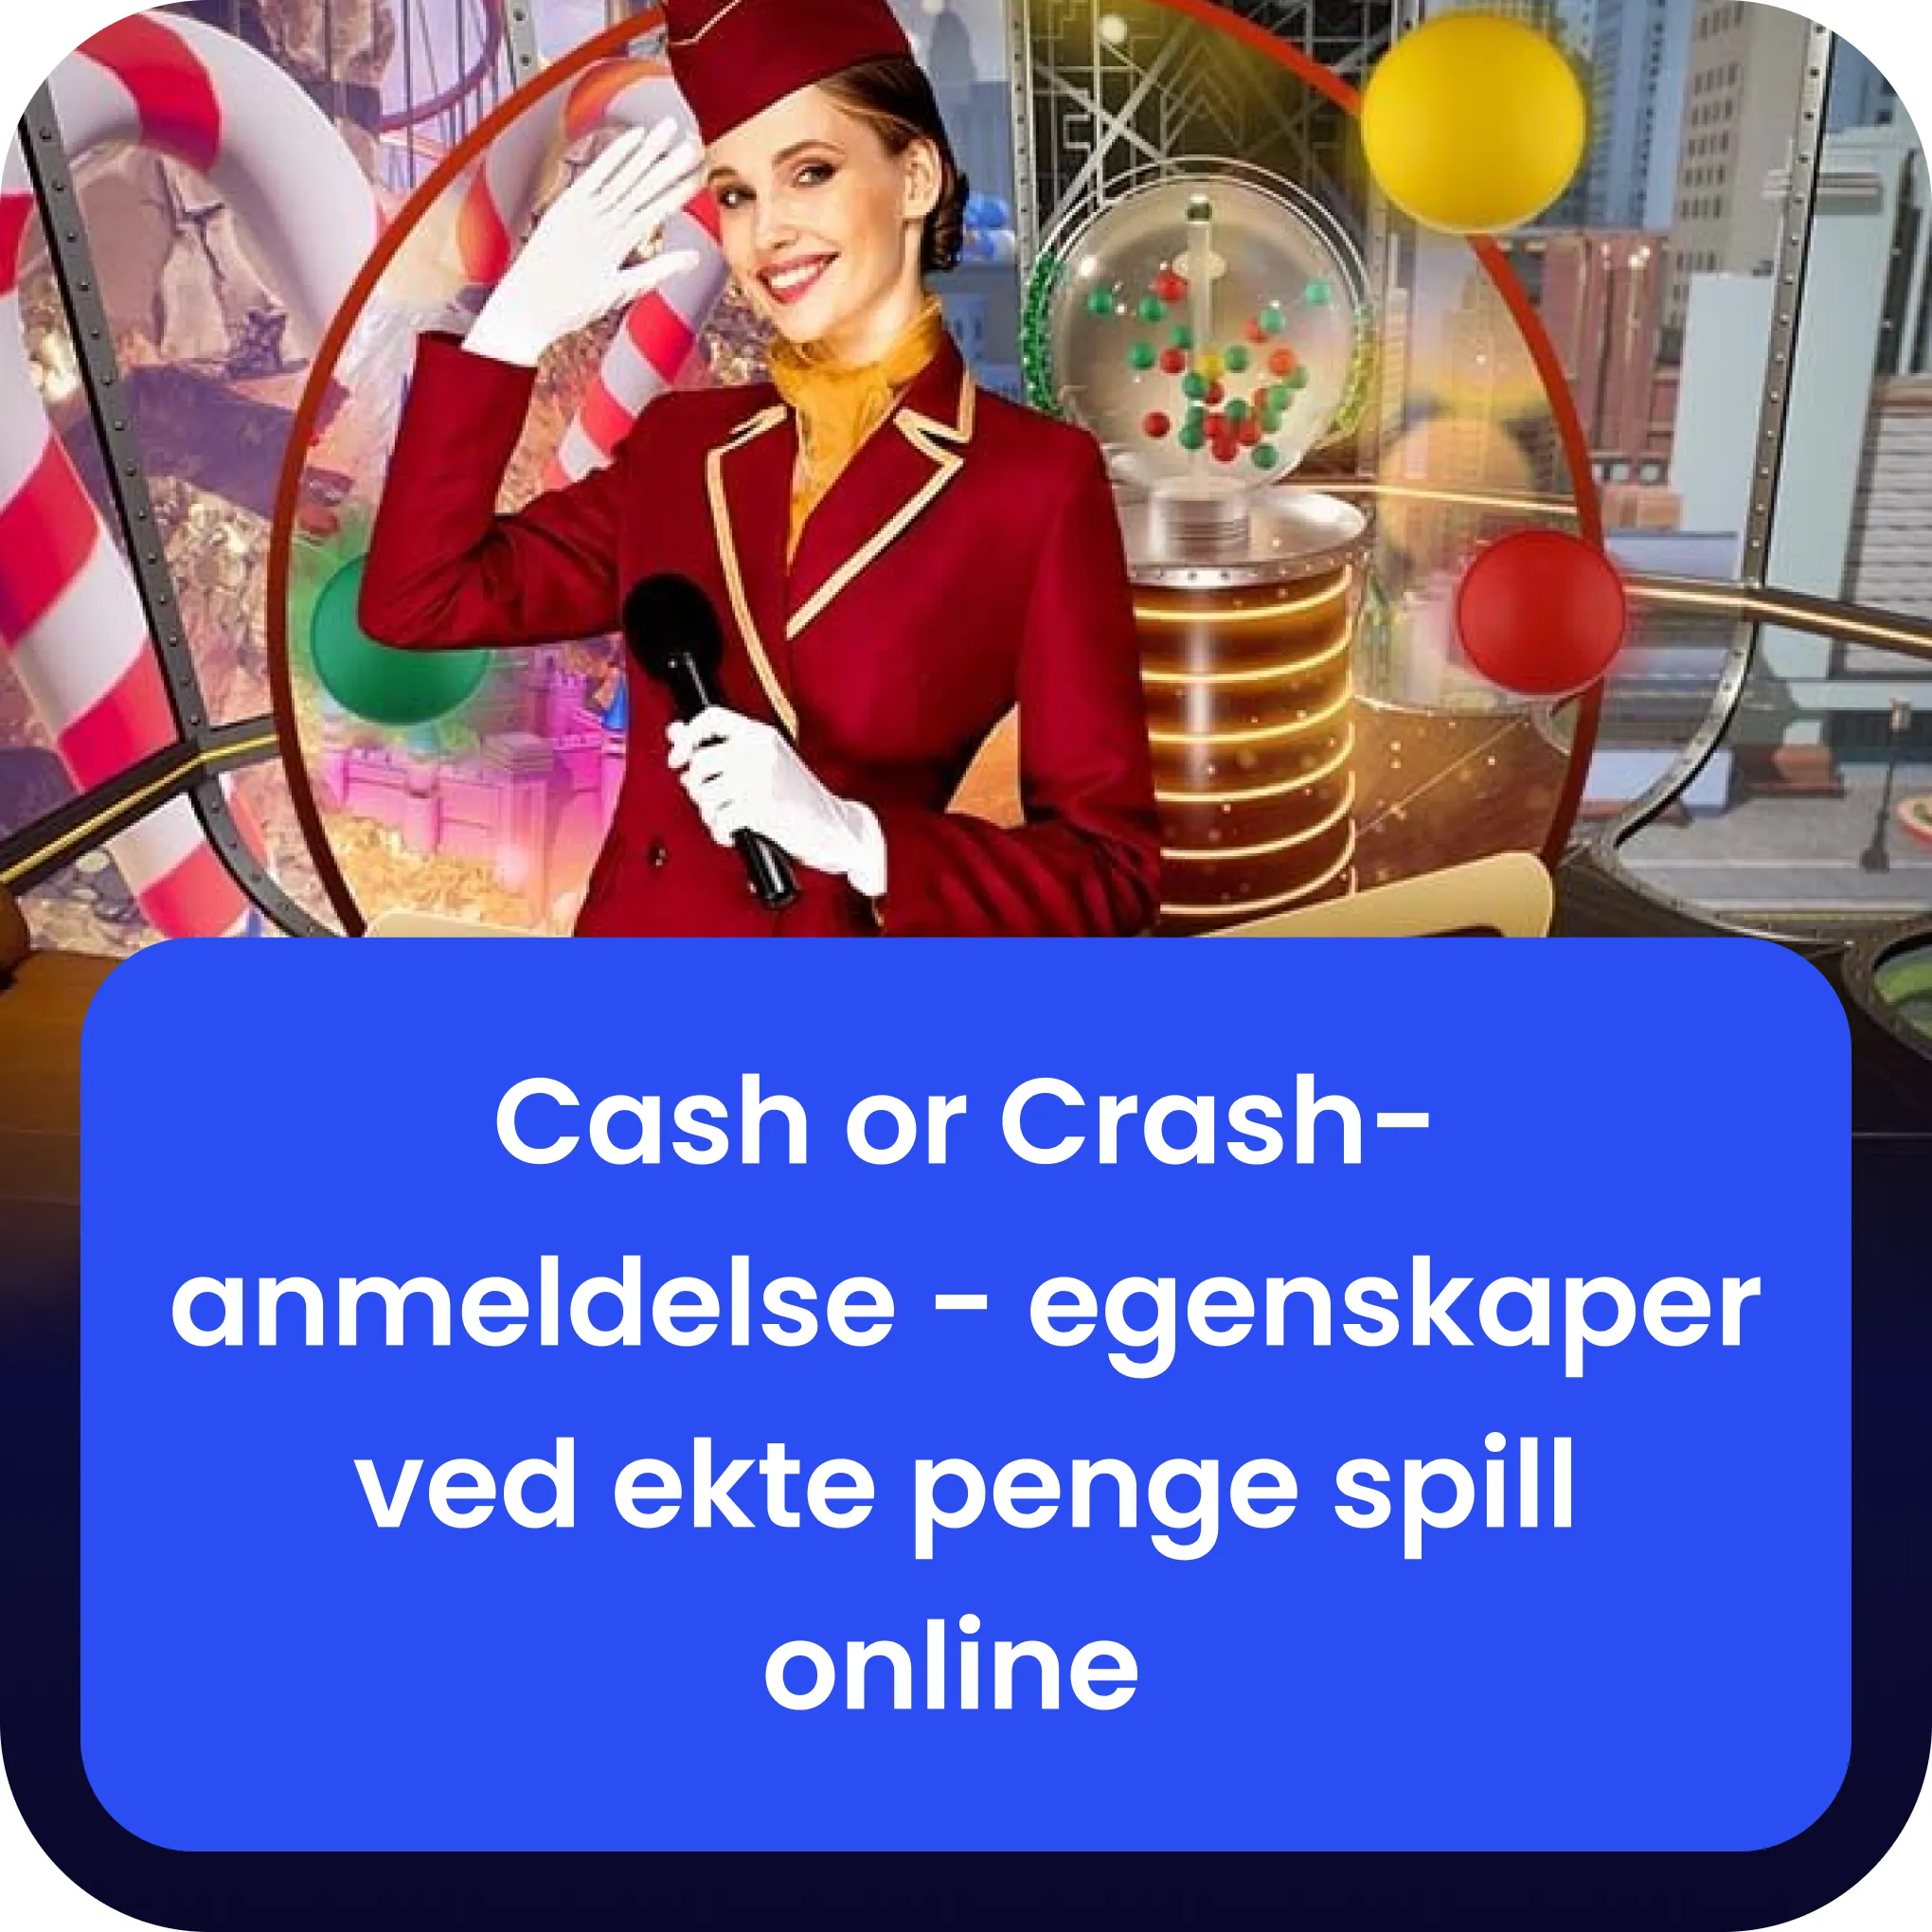 Cash or Crash anmeldelse